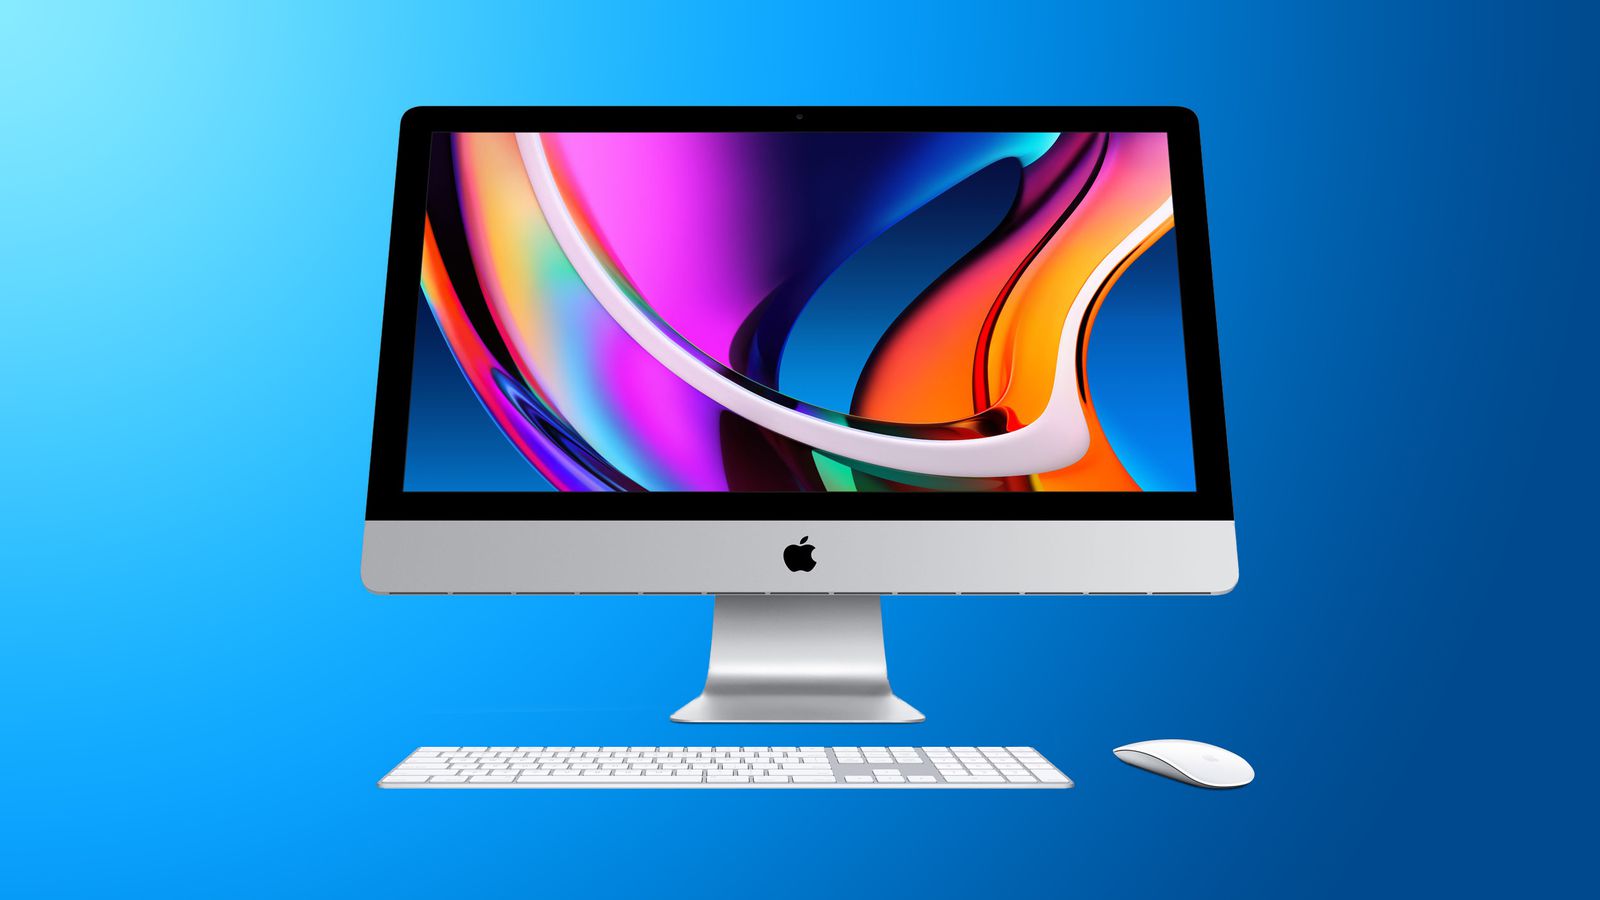 Hãy trải nghiệm sự khác biệt tuyệt vời khi xem hình ảnh trên màn hình nano-texture của iMac 27 inch. Công nghệ này cho phép bạn tận hưởng những bức ảnh sáng rõ, chi tiết đến từng phần và trung thực hơn nhiều so với các loại màn hình thông thường.